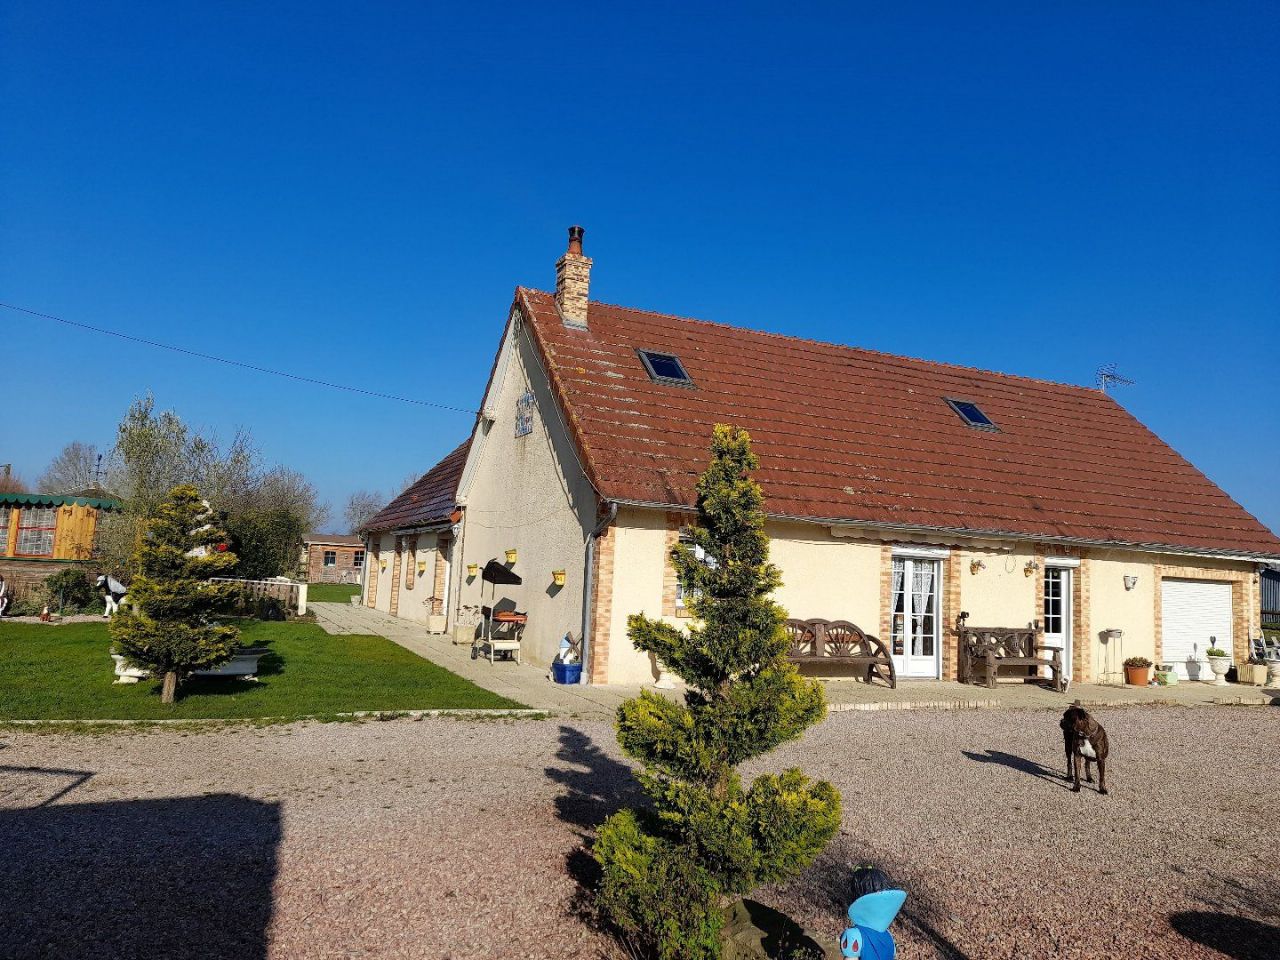 Maison à Pacy-sur-Eure, France - image 1